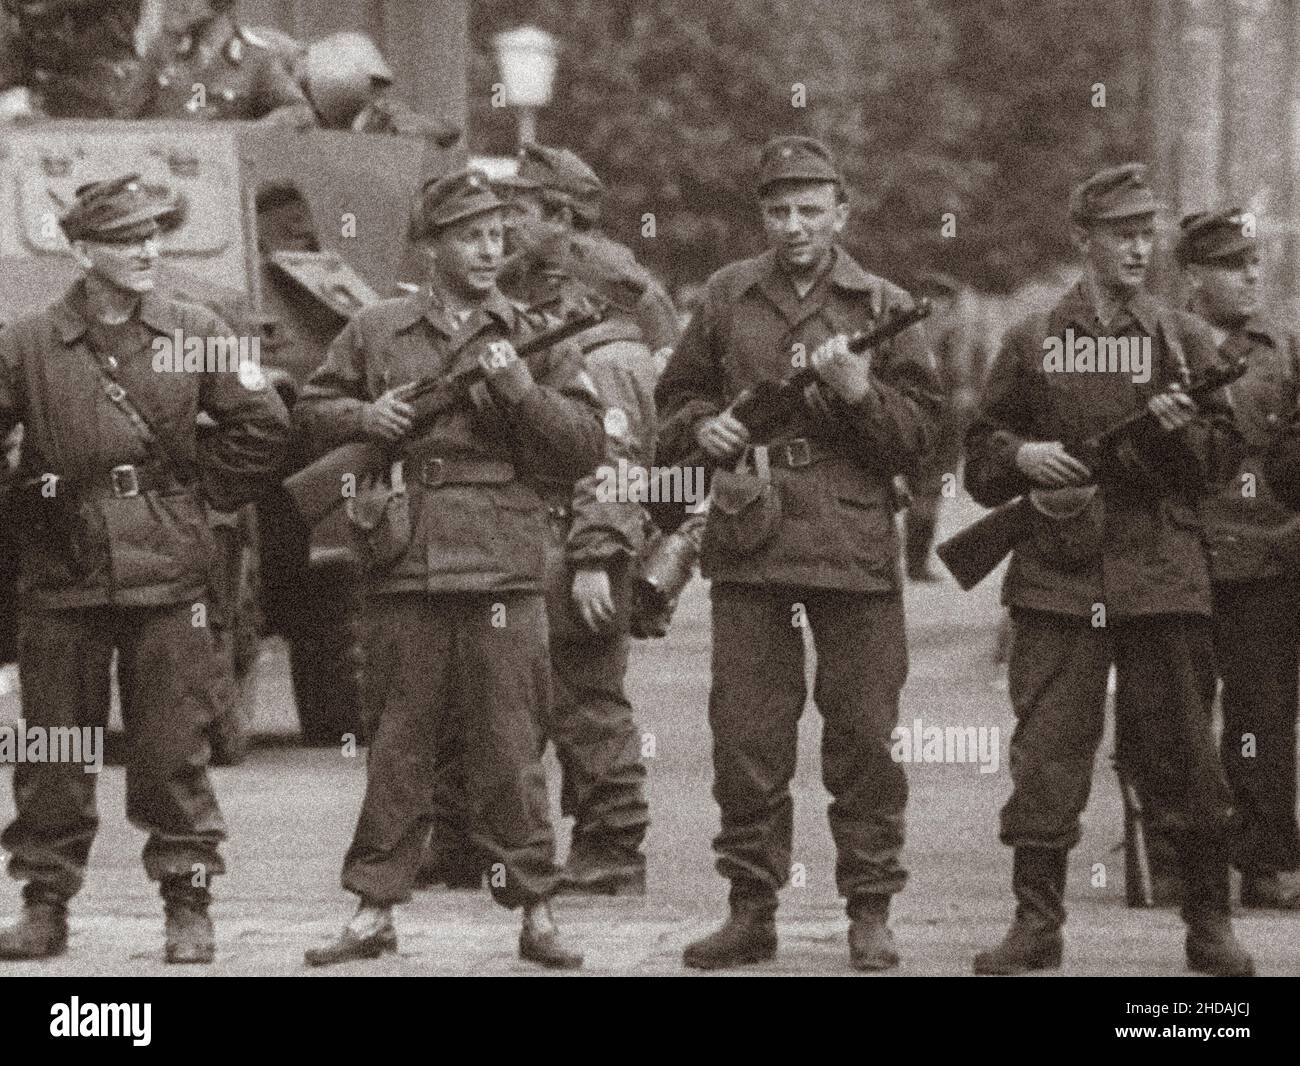 Crise de Berlin en 1961.Début de la construction du mur de Berlin.Groupes de combat d'Allemagne de l'est de la classe de travail ('Betriebskampfgruppen') avec sovi Banque D'Images